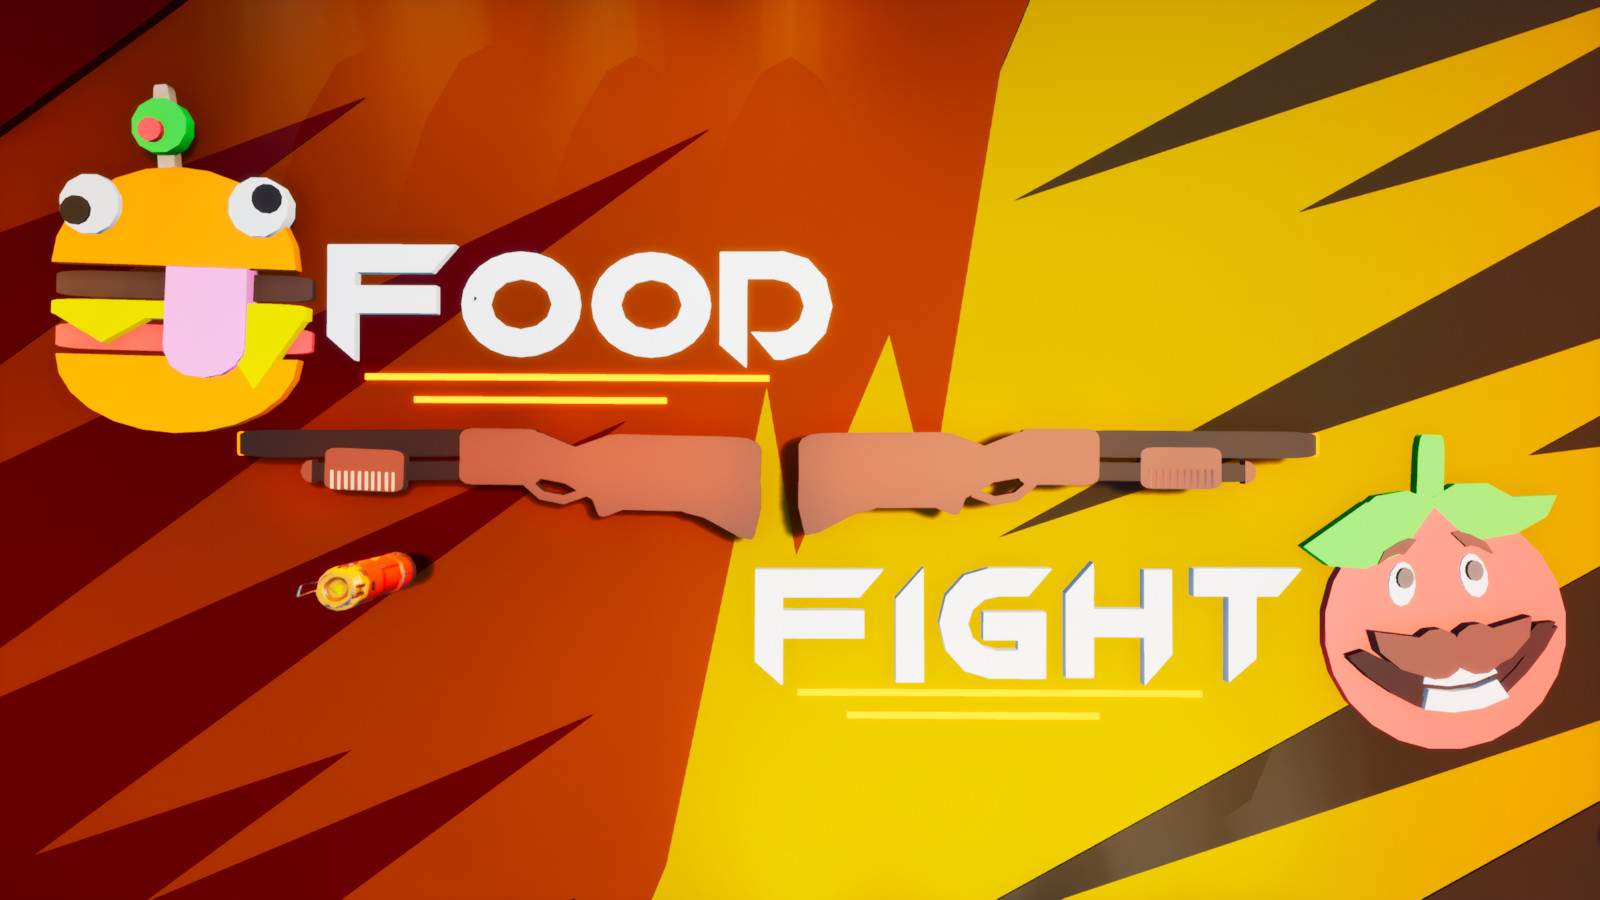 OG FOOD FIGHT!